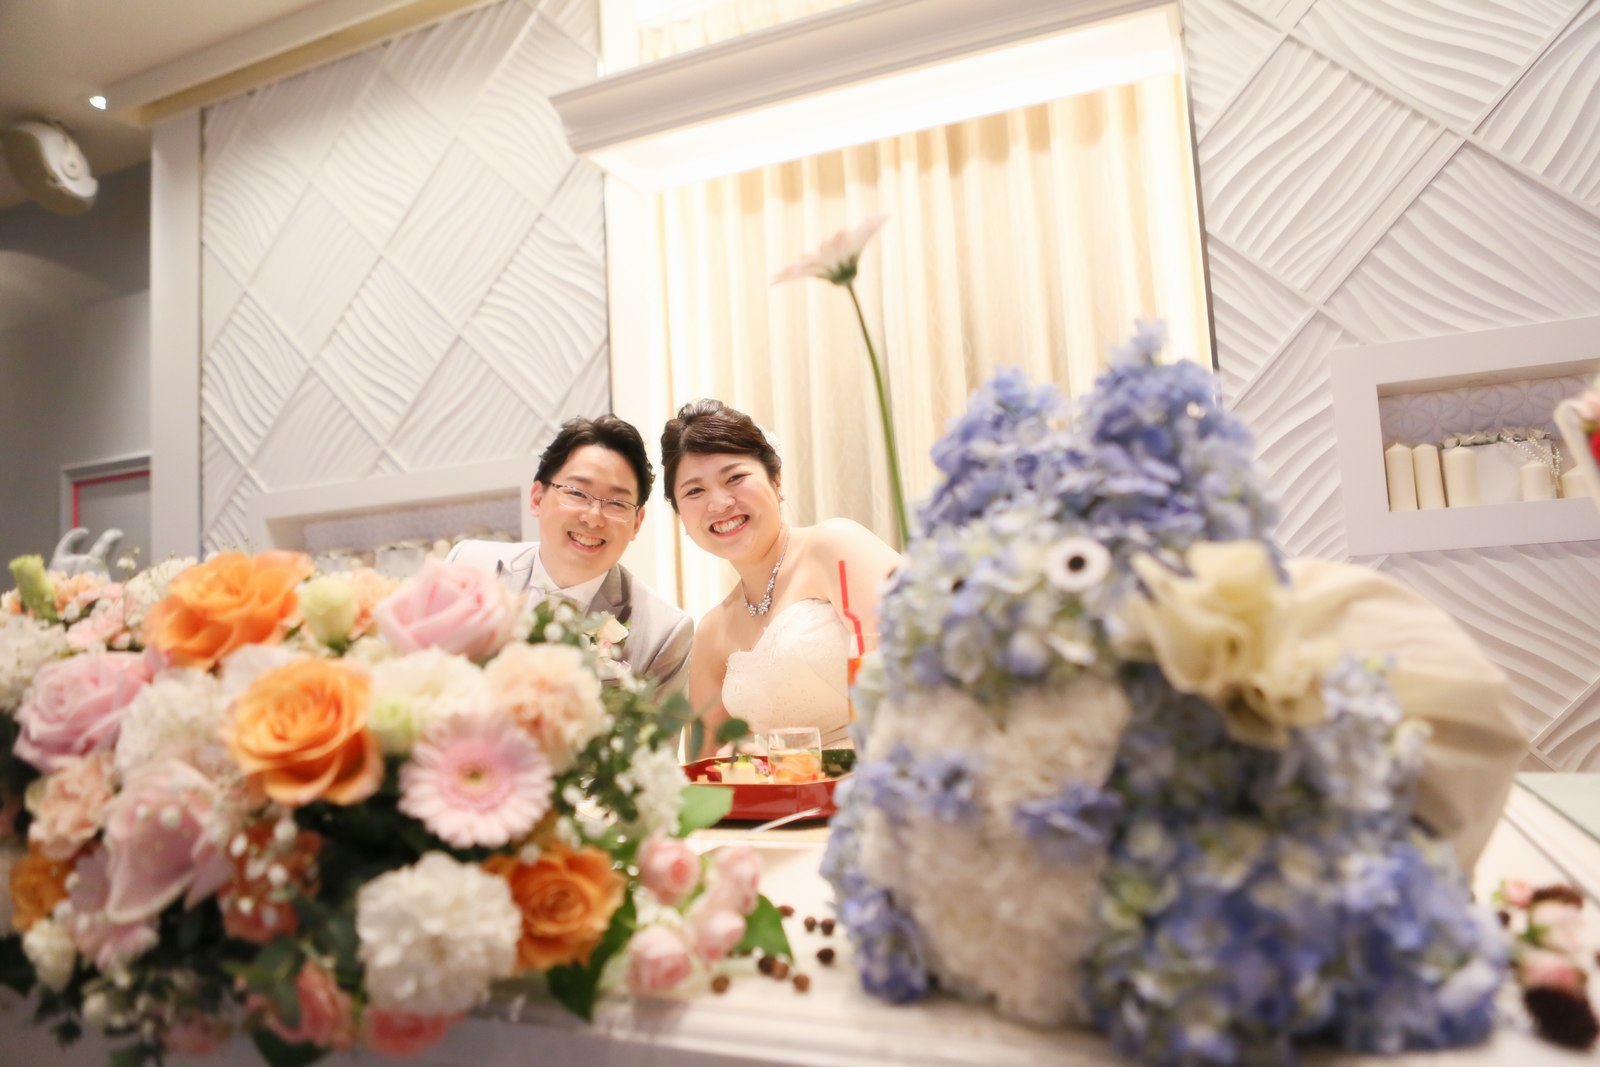 徳島市の結婚式場ブランアンジュの披露宴会場で笑顔の記念写真を撮る新郎新婦